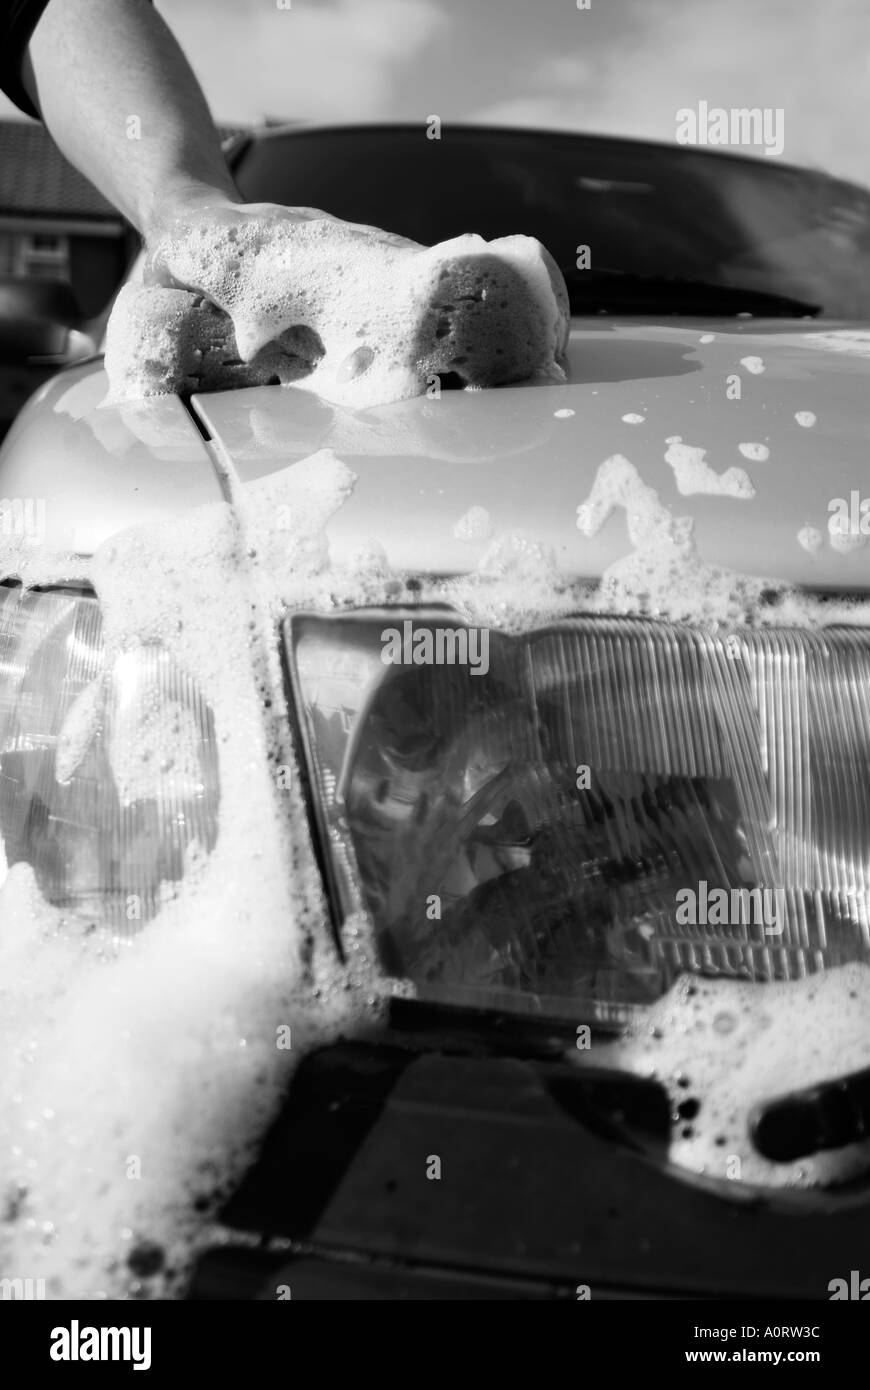 Laver sa voiture l'homme fier fierté propre lavage lavage de voiture de l'eau savonneuse polonais de l'eau savonneuse sale saleté route benne voiture Banque D'Images